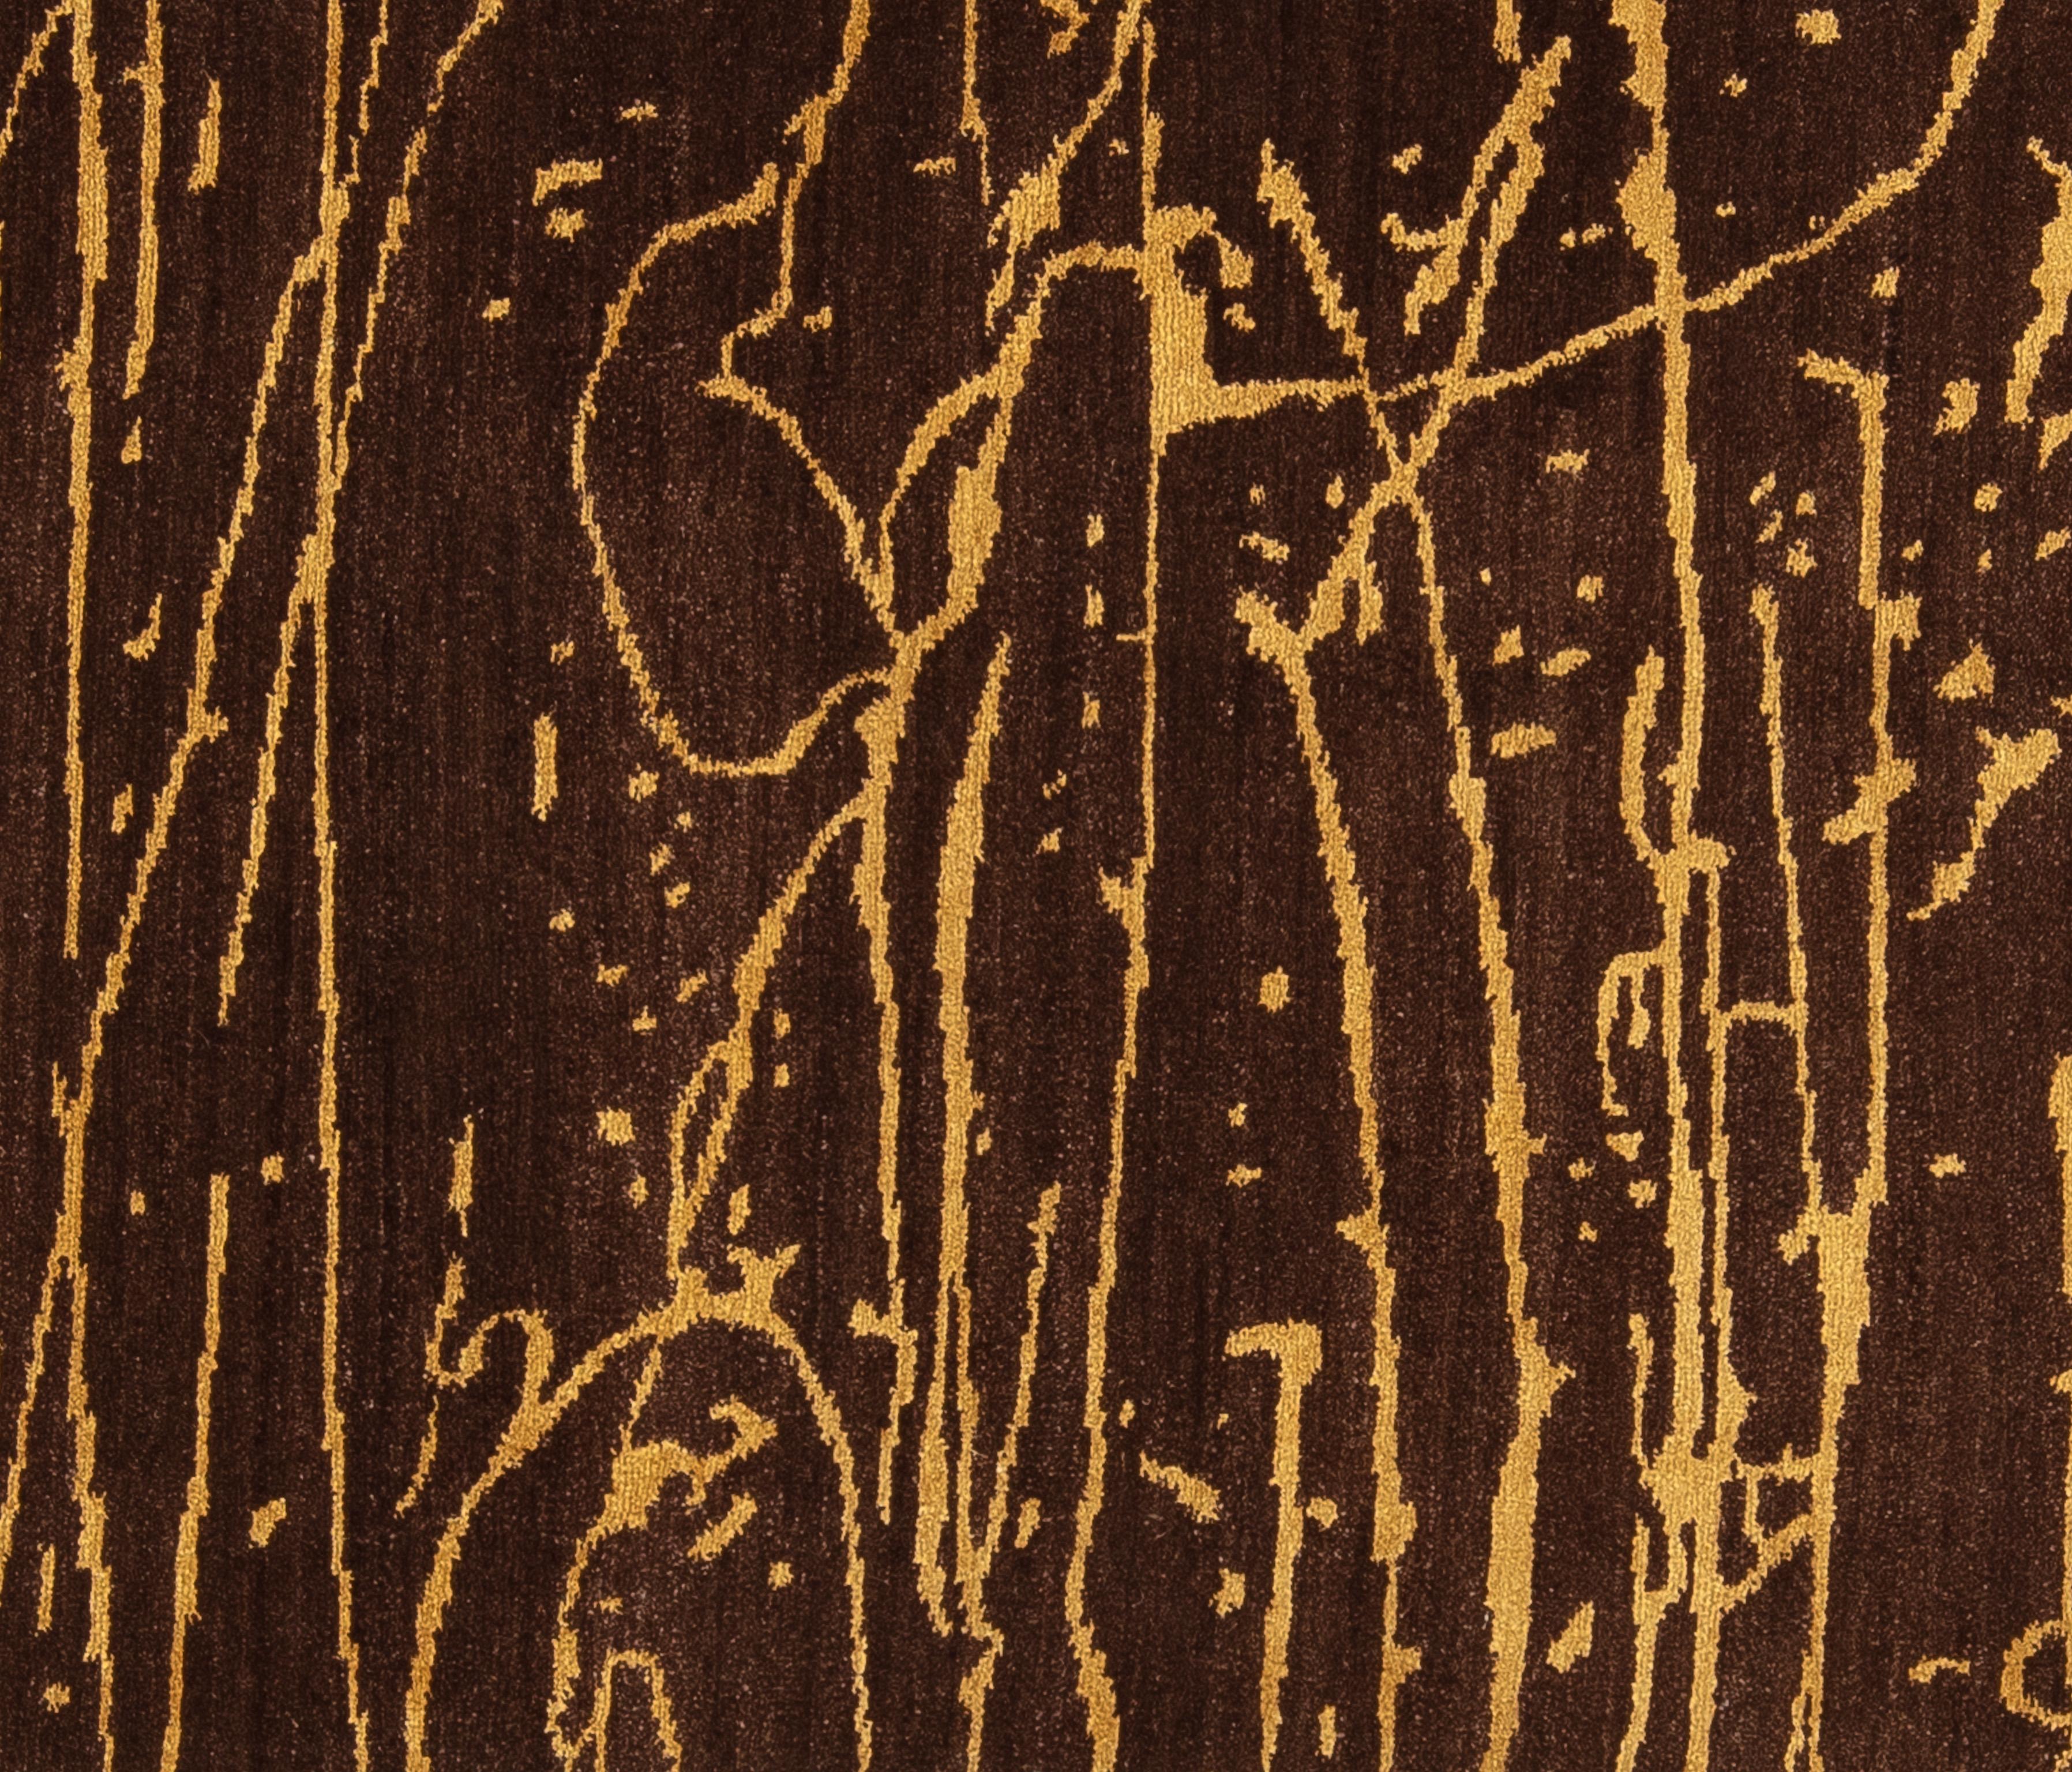 Tapis abstrait moderne tissé avec de la pure laine et de la soie de Nouvelle-Zélande. Le design unique et la palette de couleurs neutres font de ce tapis le complément parfait d'un décor minimaliste et moderne. 

Taille - 6'2